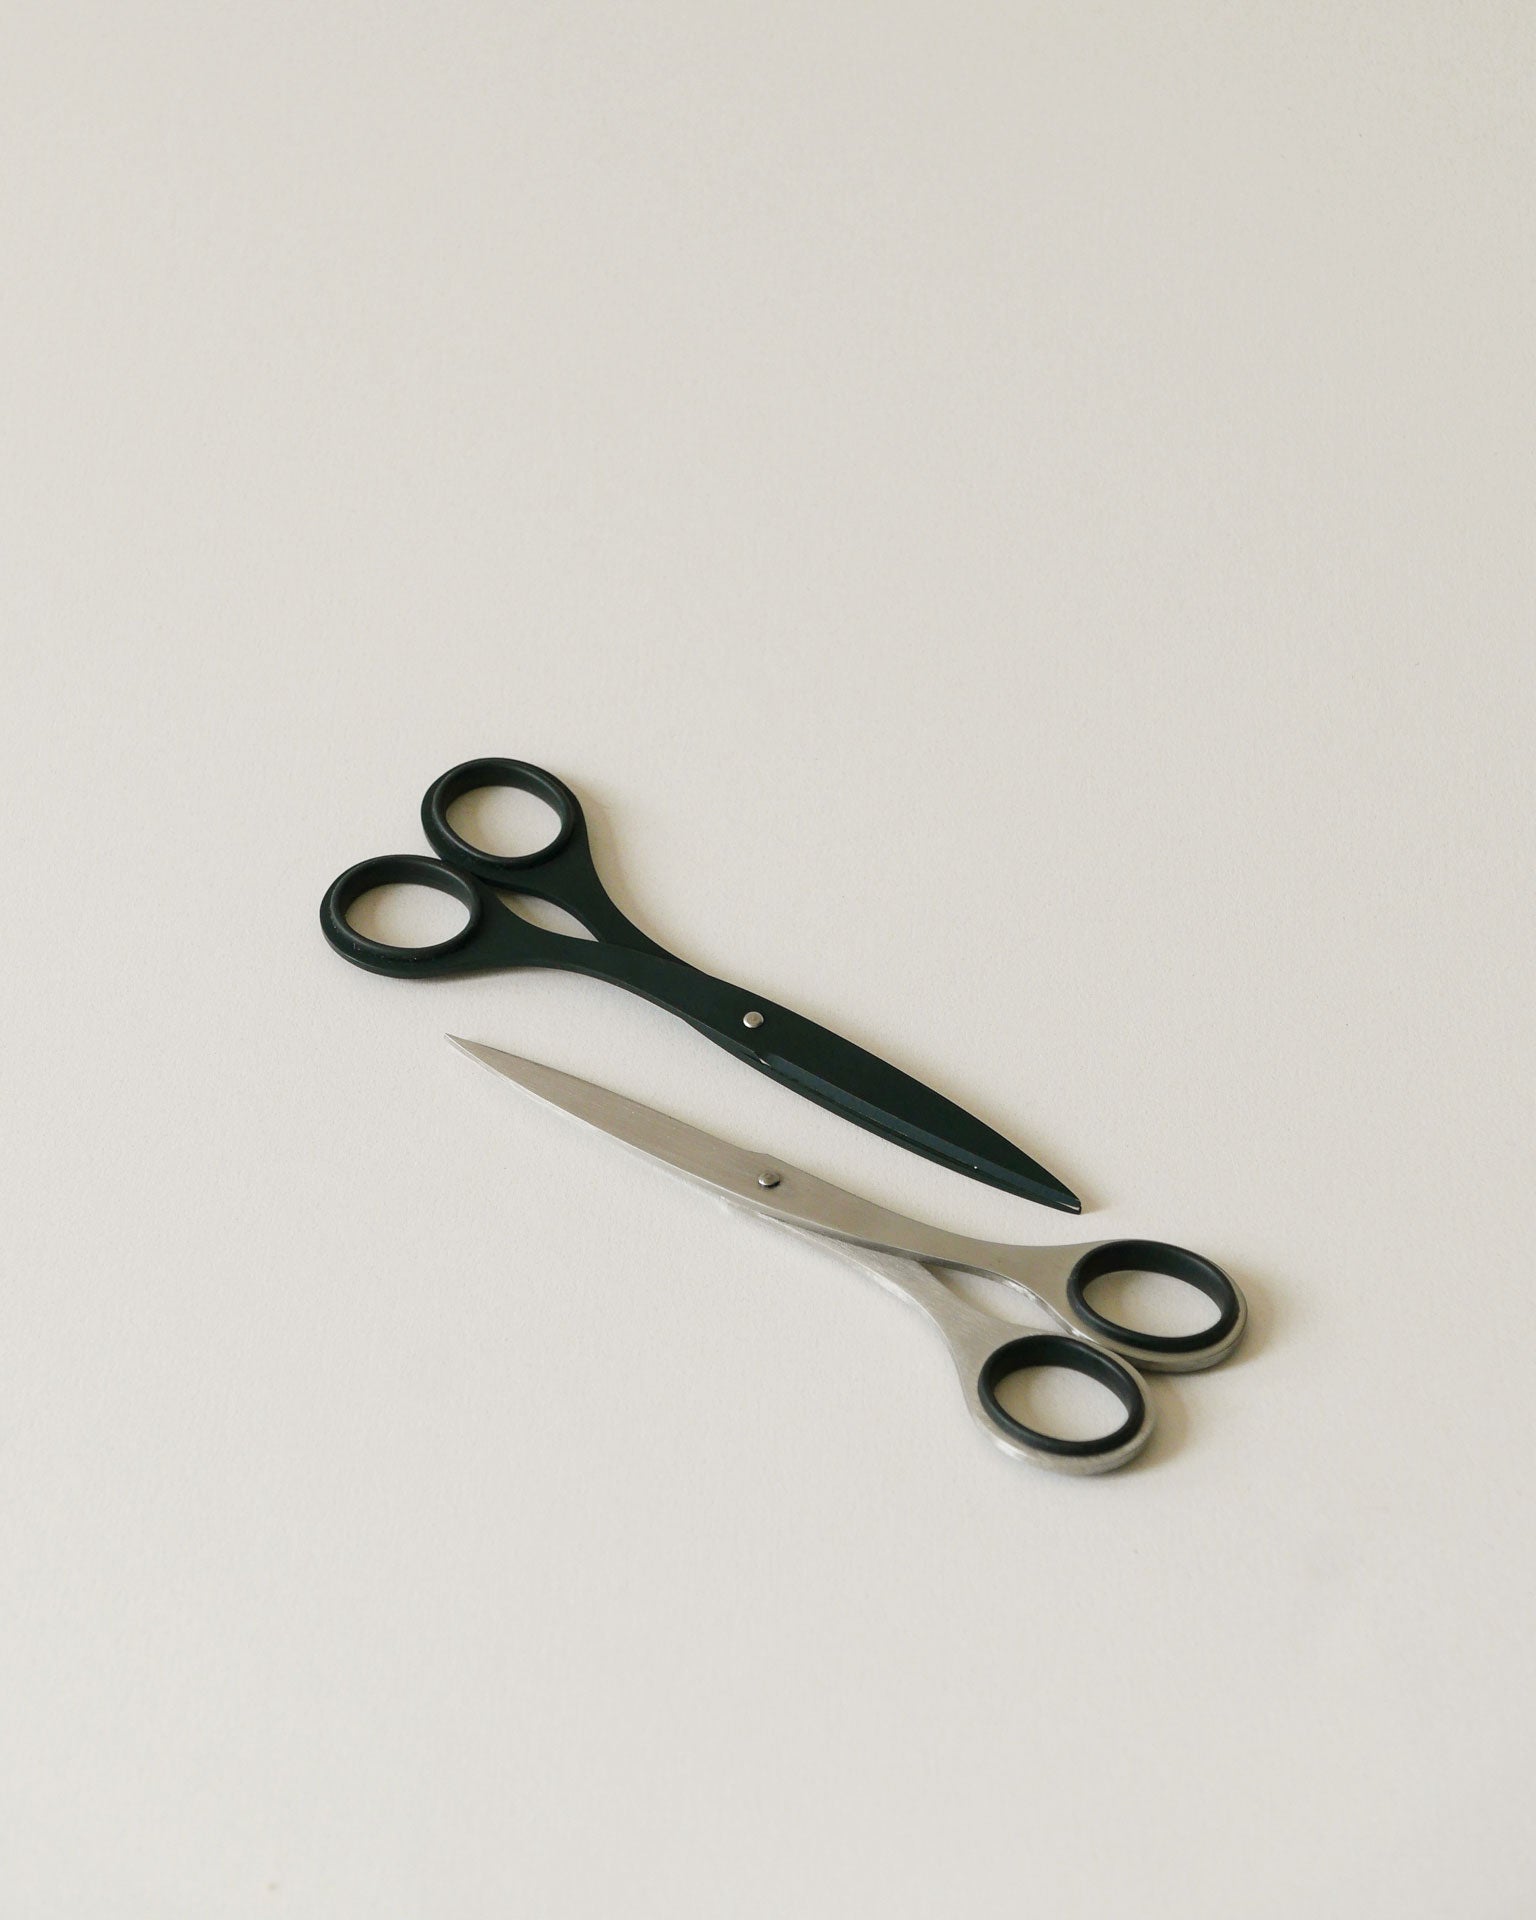 ALLEX Mini Black Scissors for Office 3.9 [Non-Stick], All Purpose